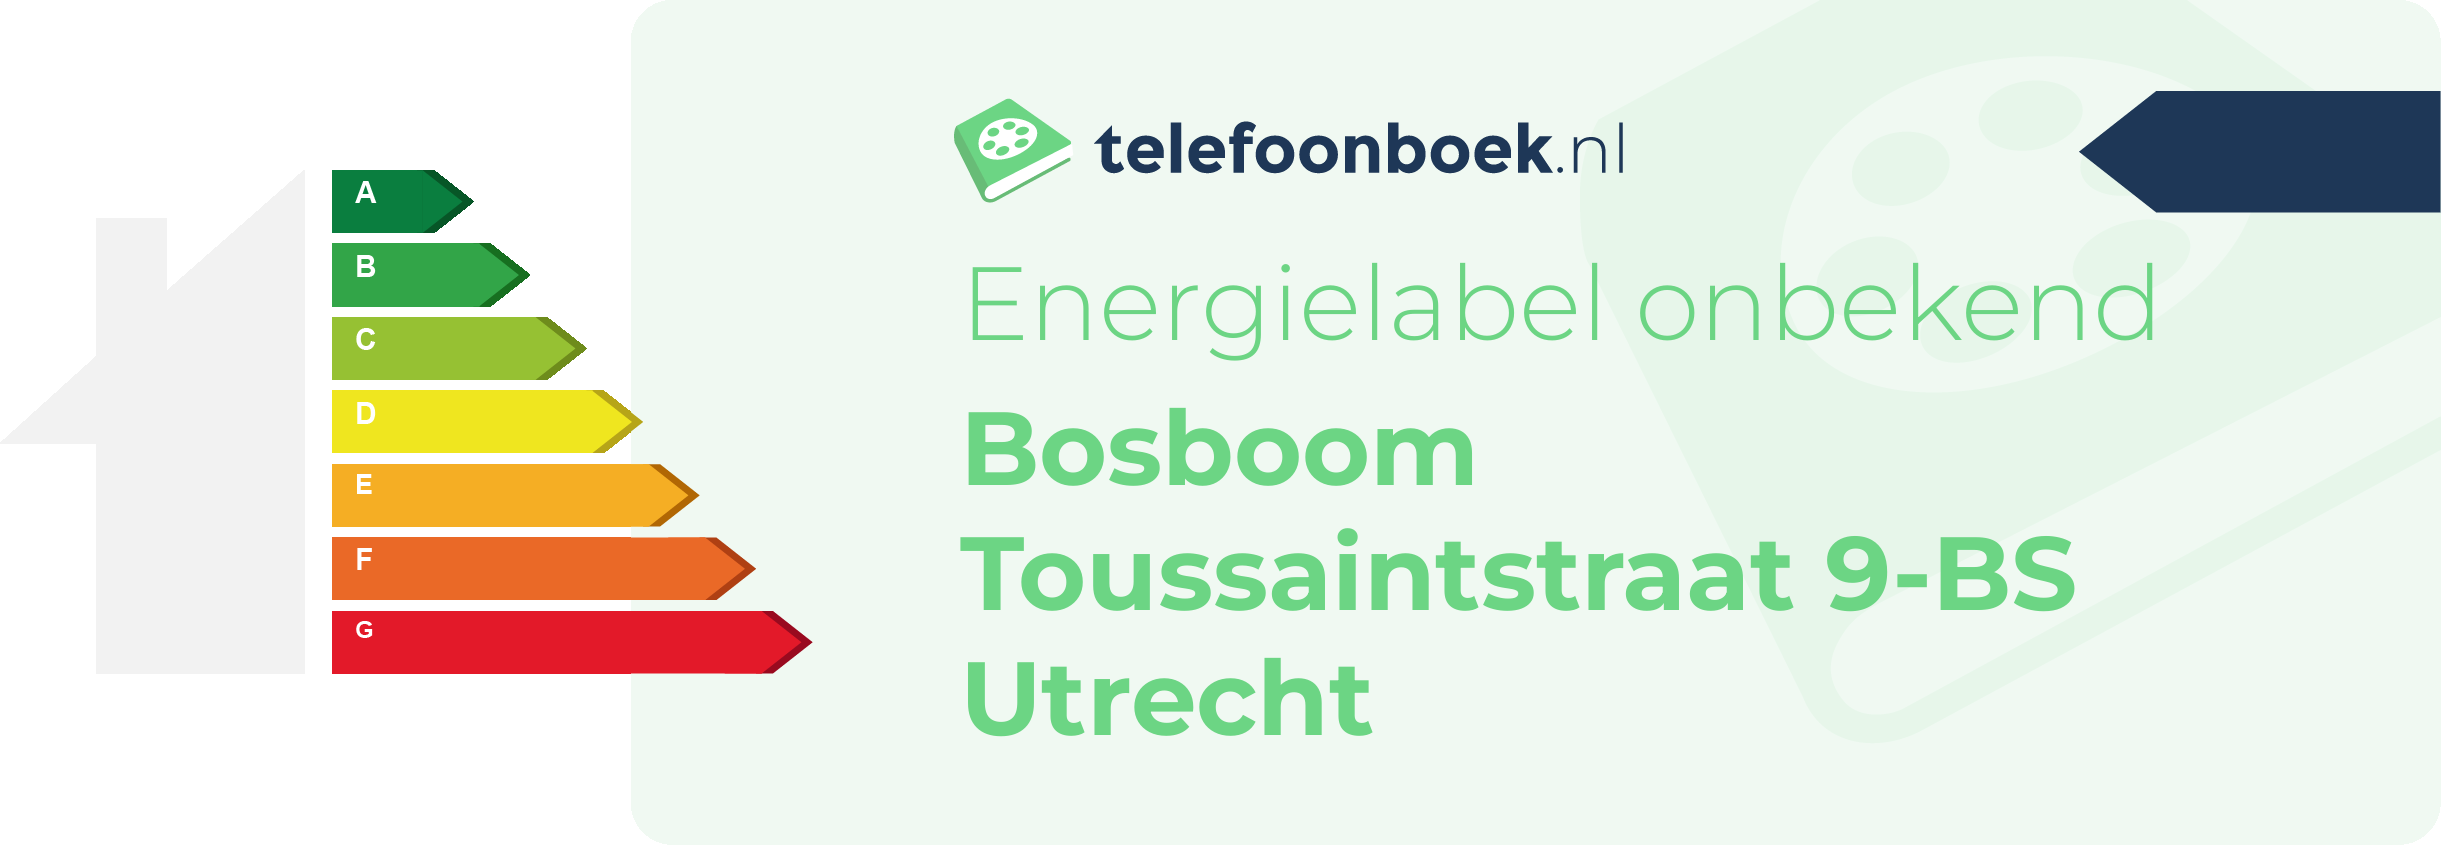 Energielabel Bosboom Toussaintstraat 9-BS Utrecht